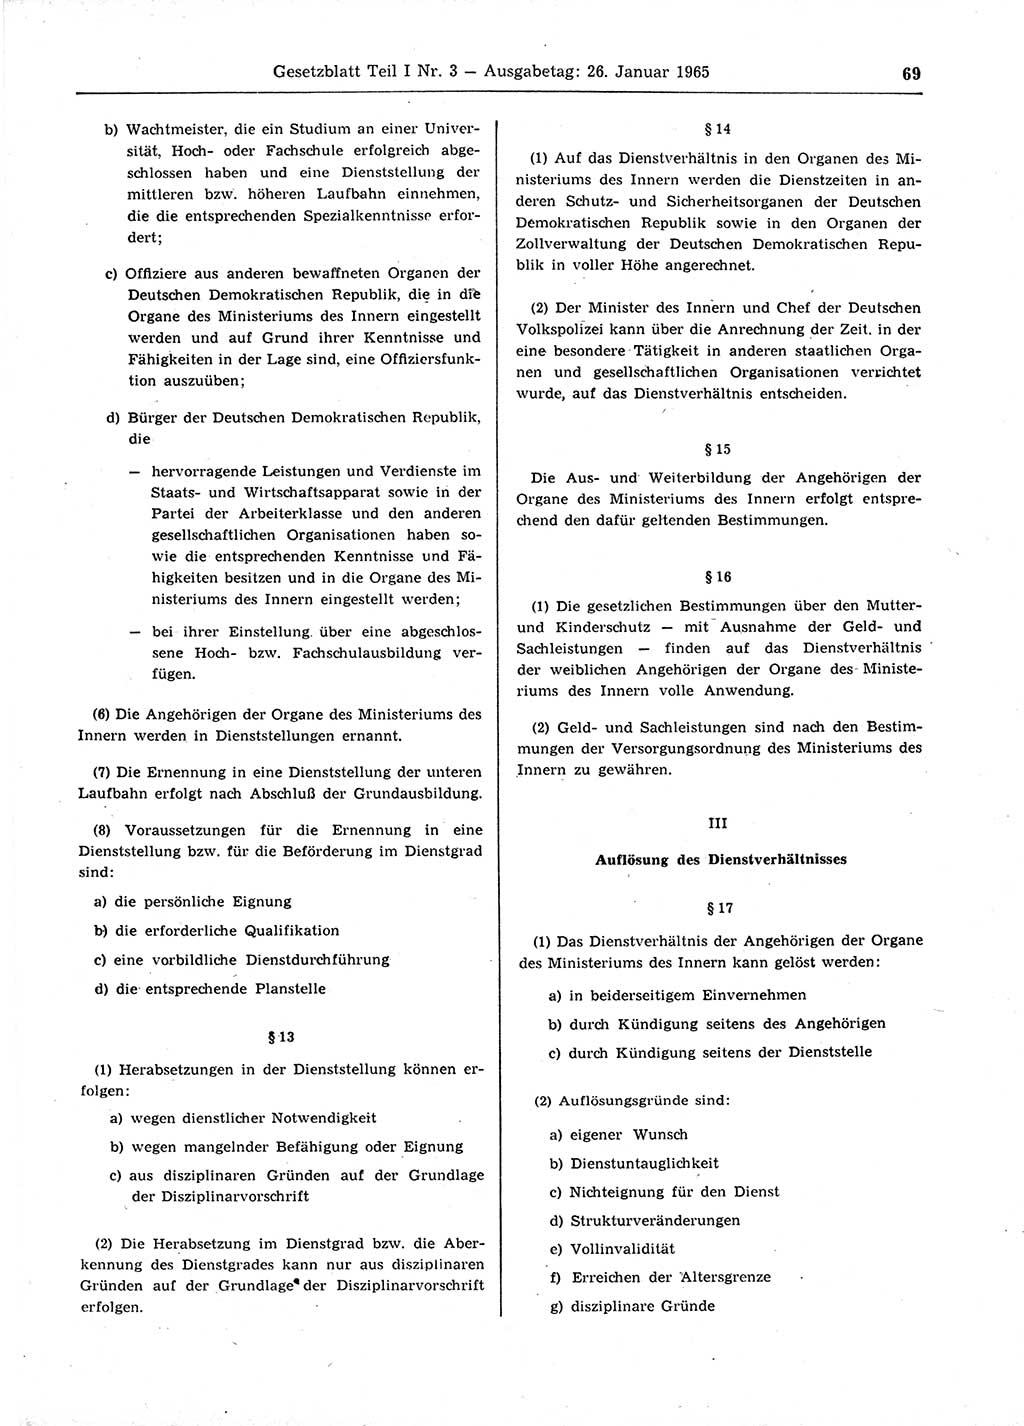 Gesetzblatt (GBl.) der Deutschen Demokratischen Republik (DDR) Teil Ⅰ 1965, Seite 69 (GBl. DDR Ⅰ 1965, S. 69)